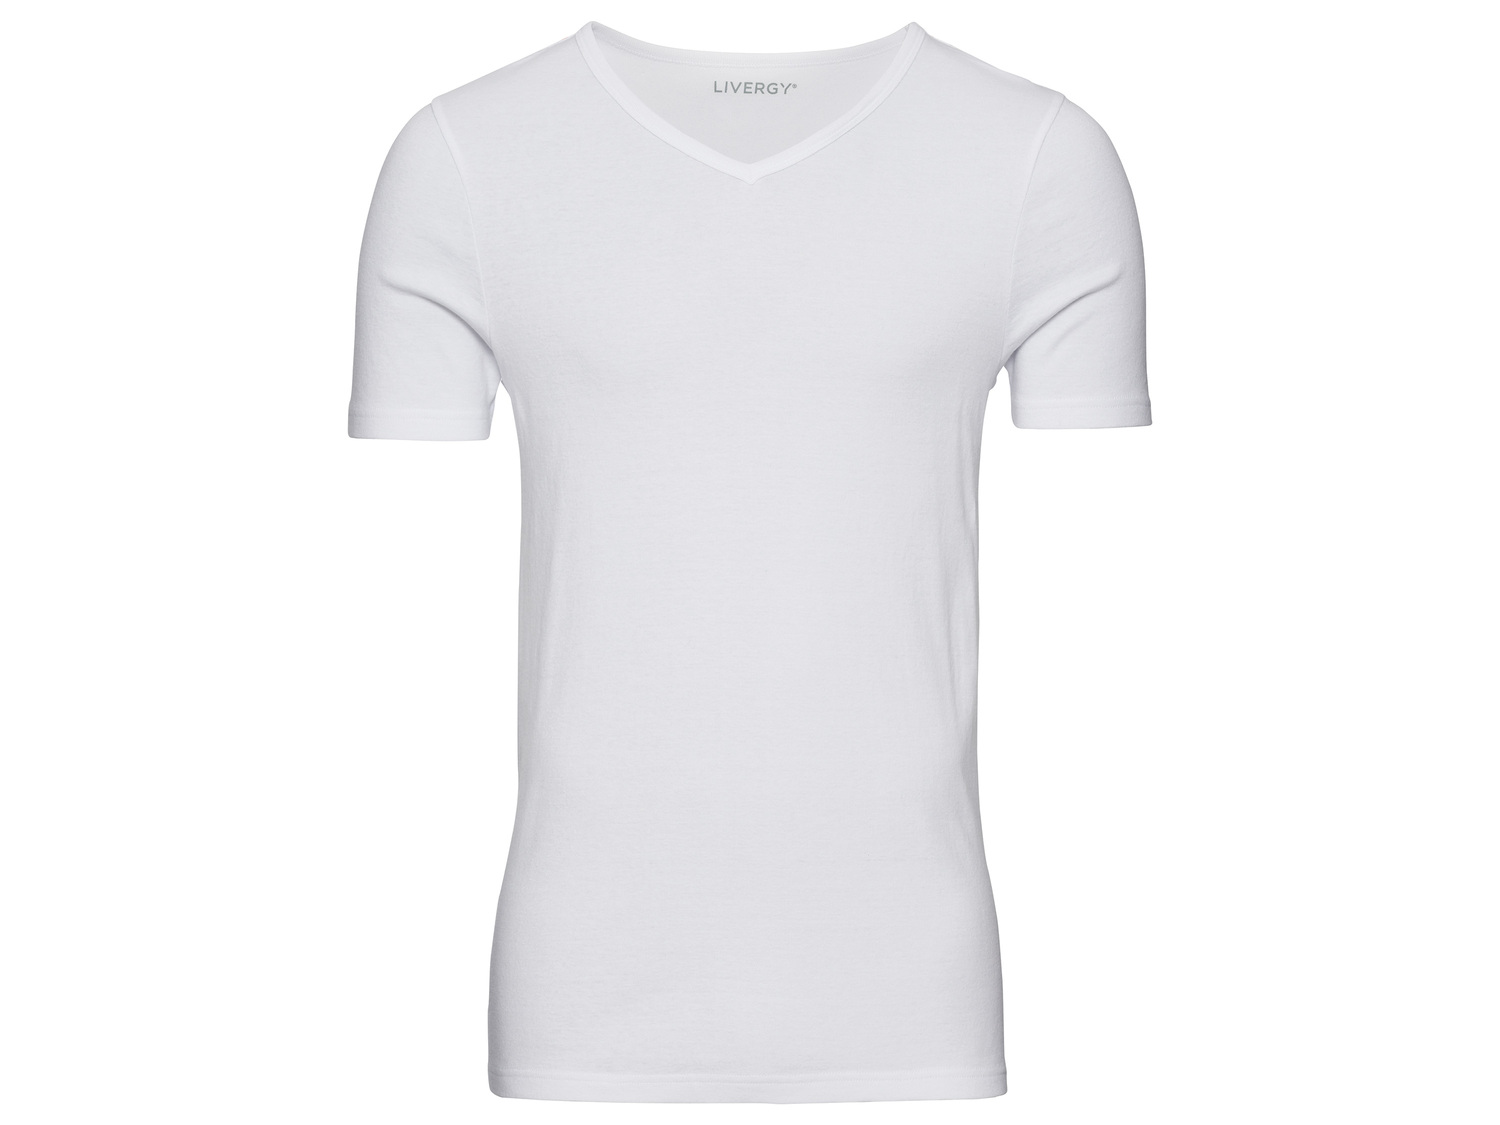 T-shirt Homme Livergy, le prix 3.99 € 
Tailles disponibles

Du S au XL selon ...